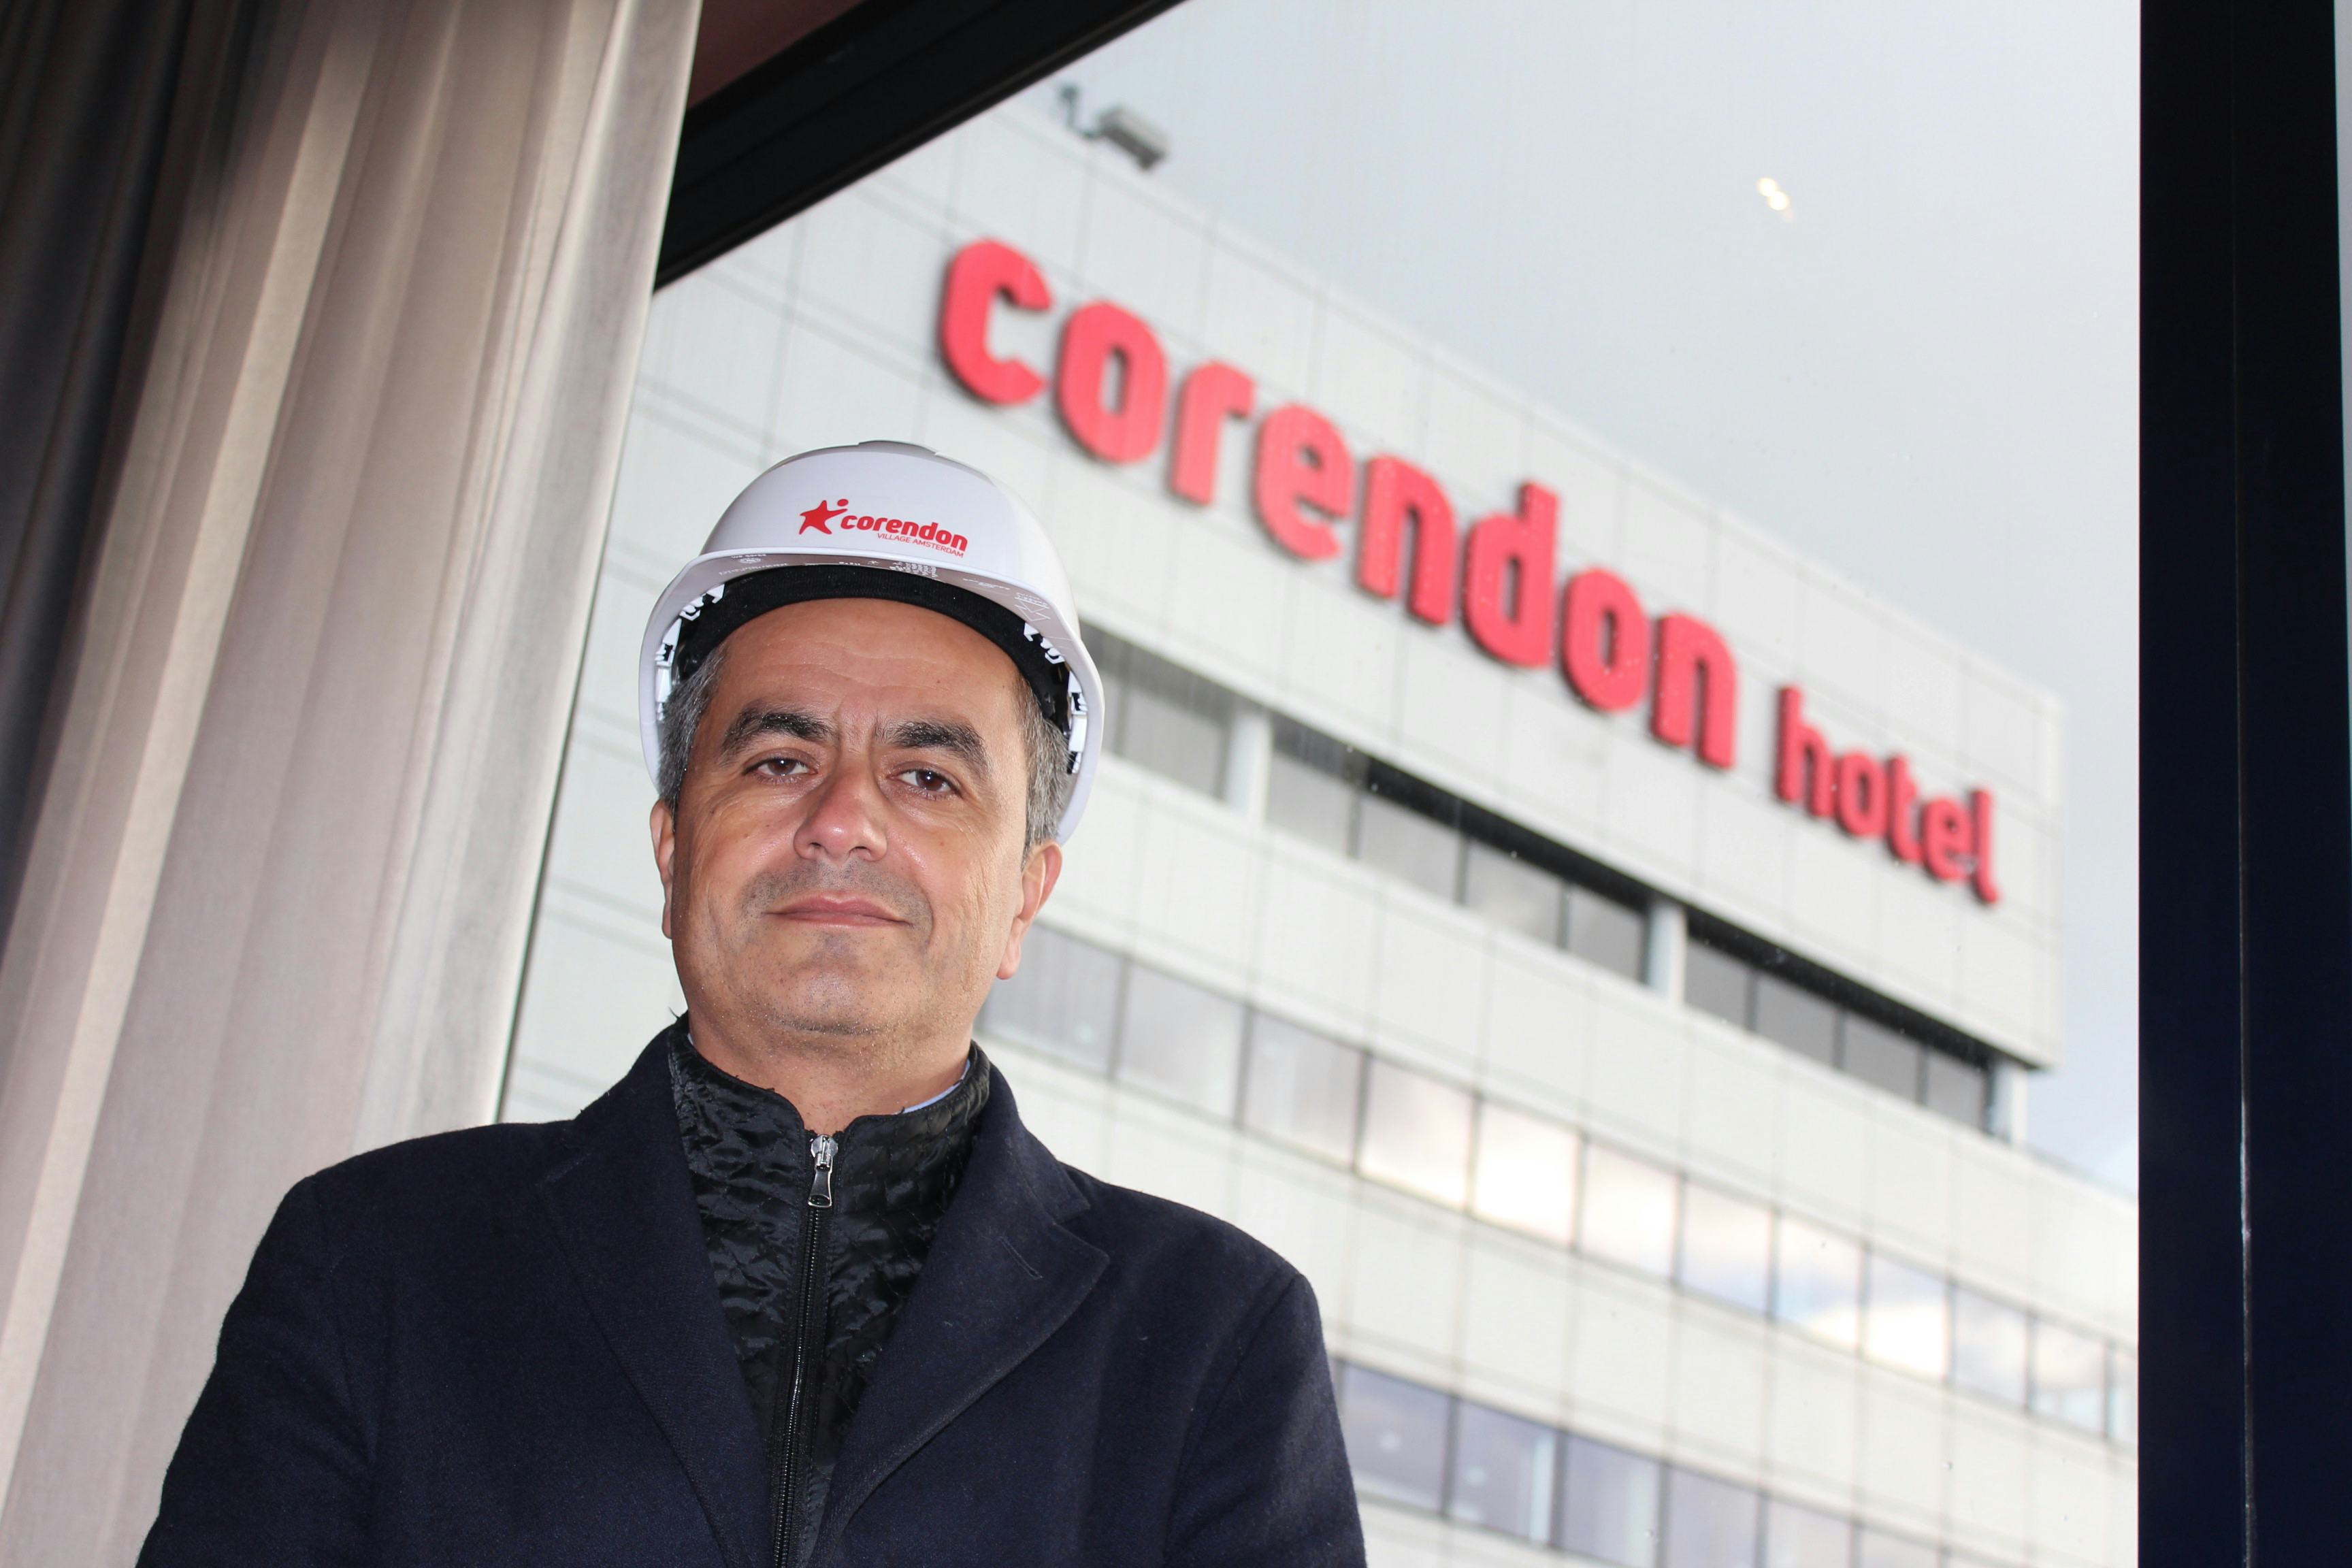 Corendon naar Sunweb; eigen hotels niet verkocht